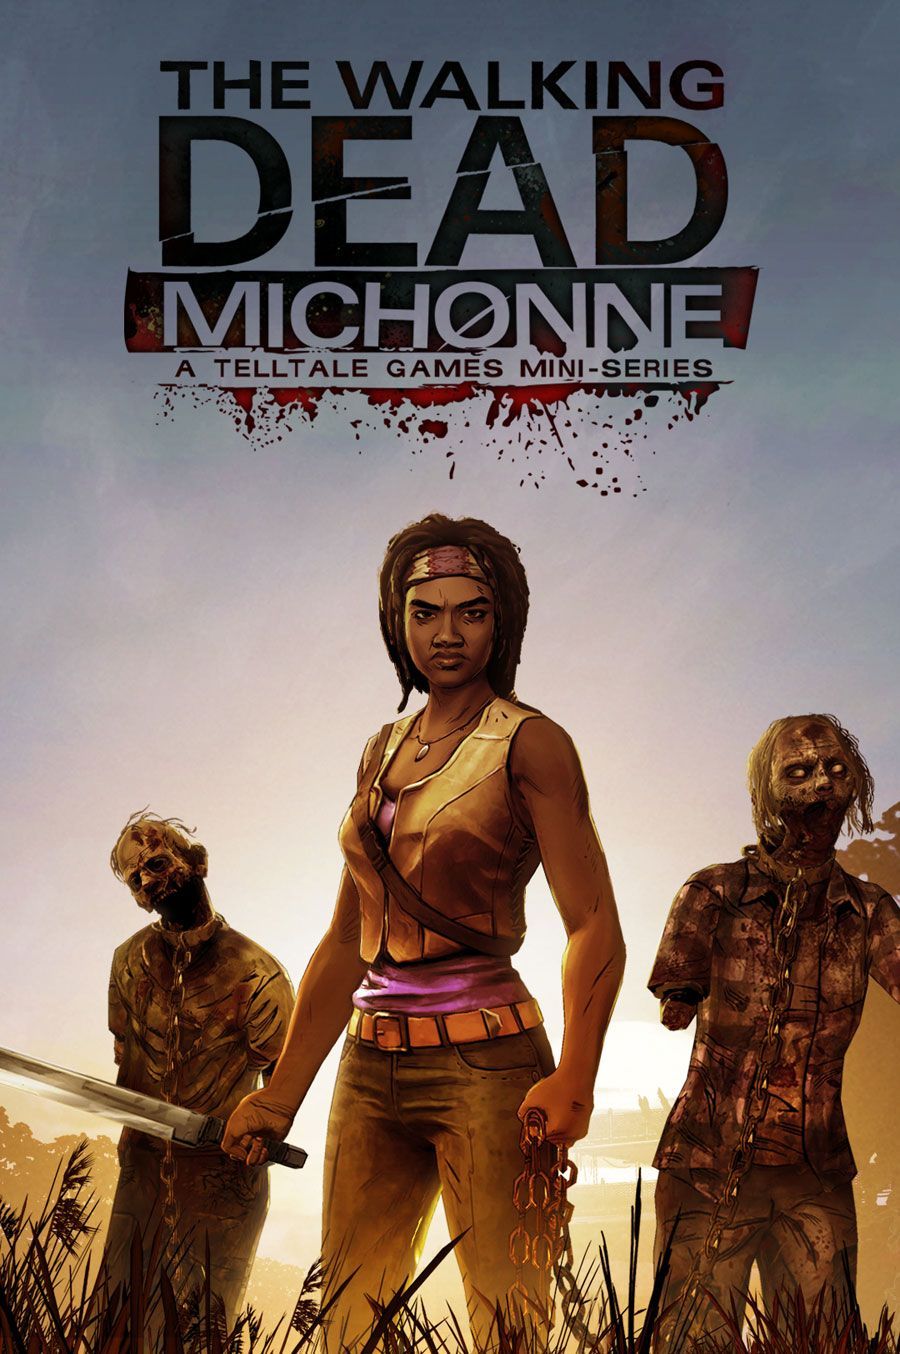 Telltale Games, Skybound обявяват играта на Walking Dead с участието на Michonne-Starring